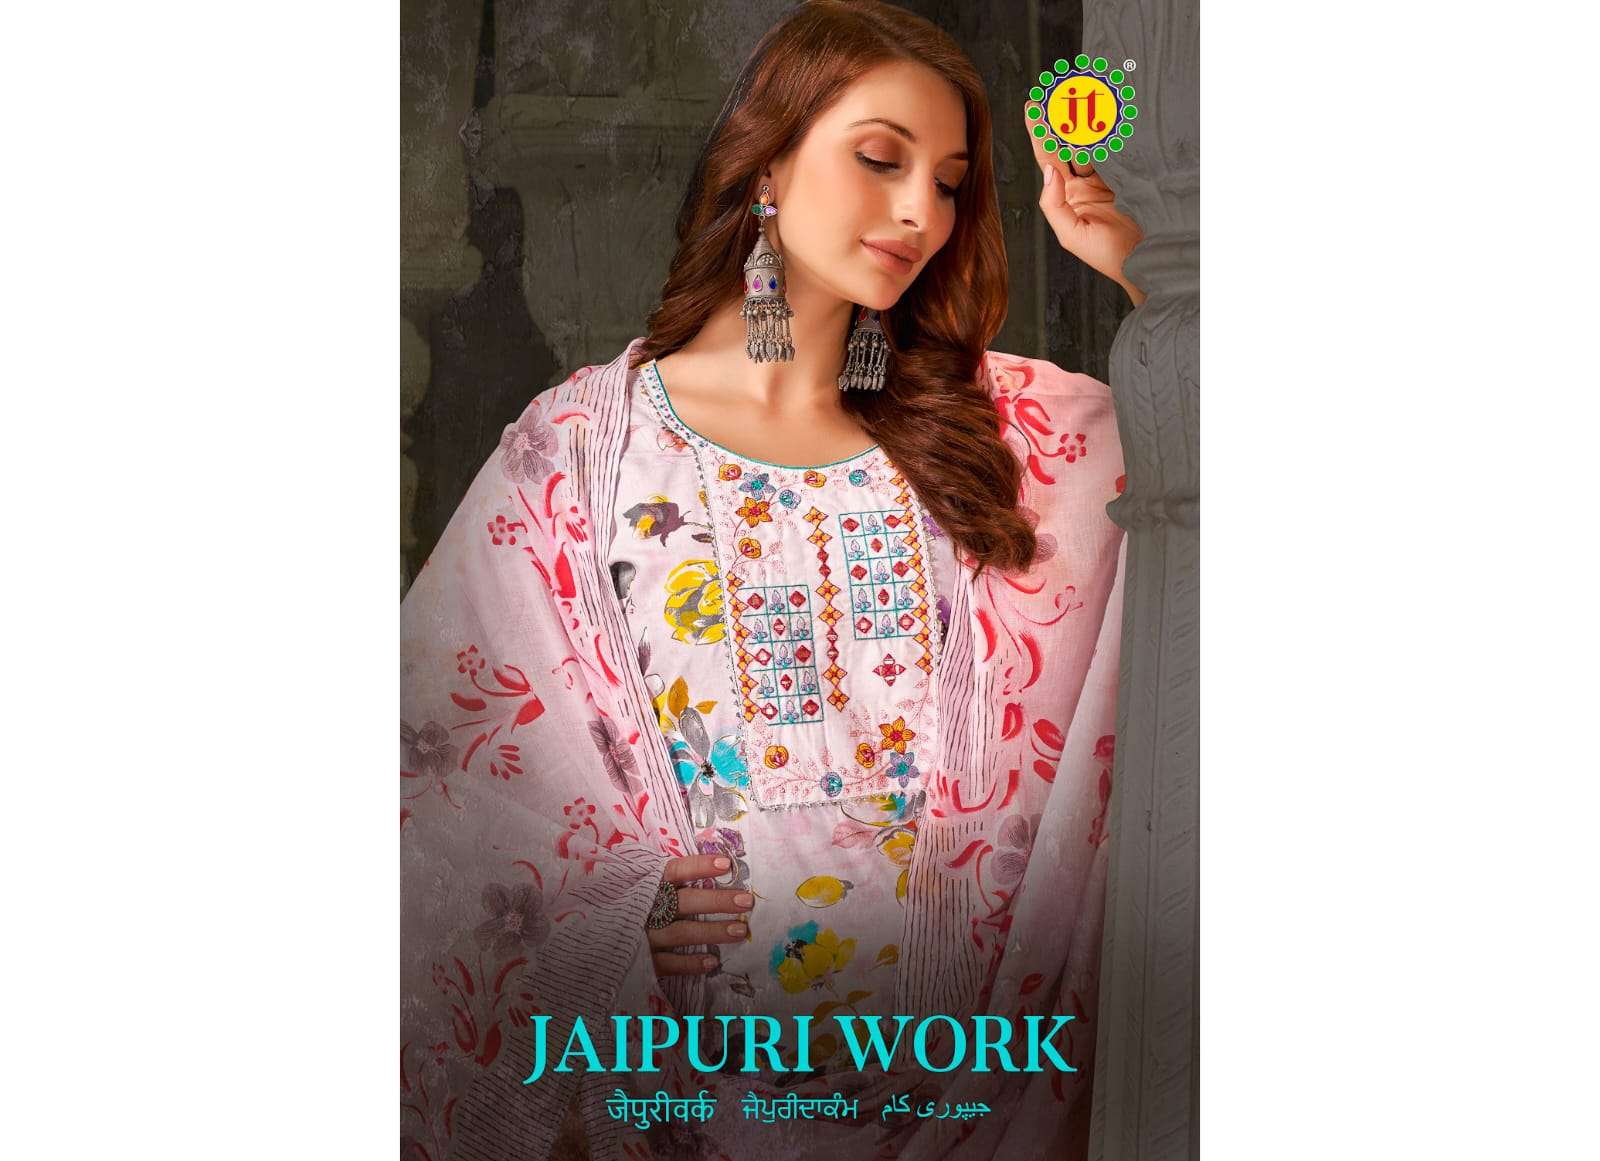 product/Jaipuri Work_01.jpeg